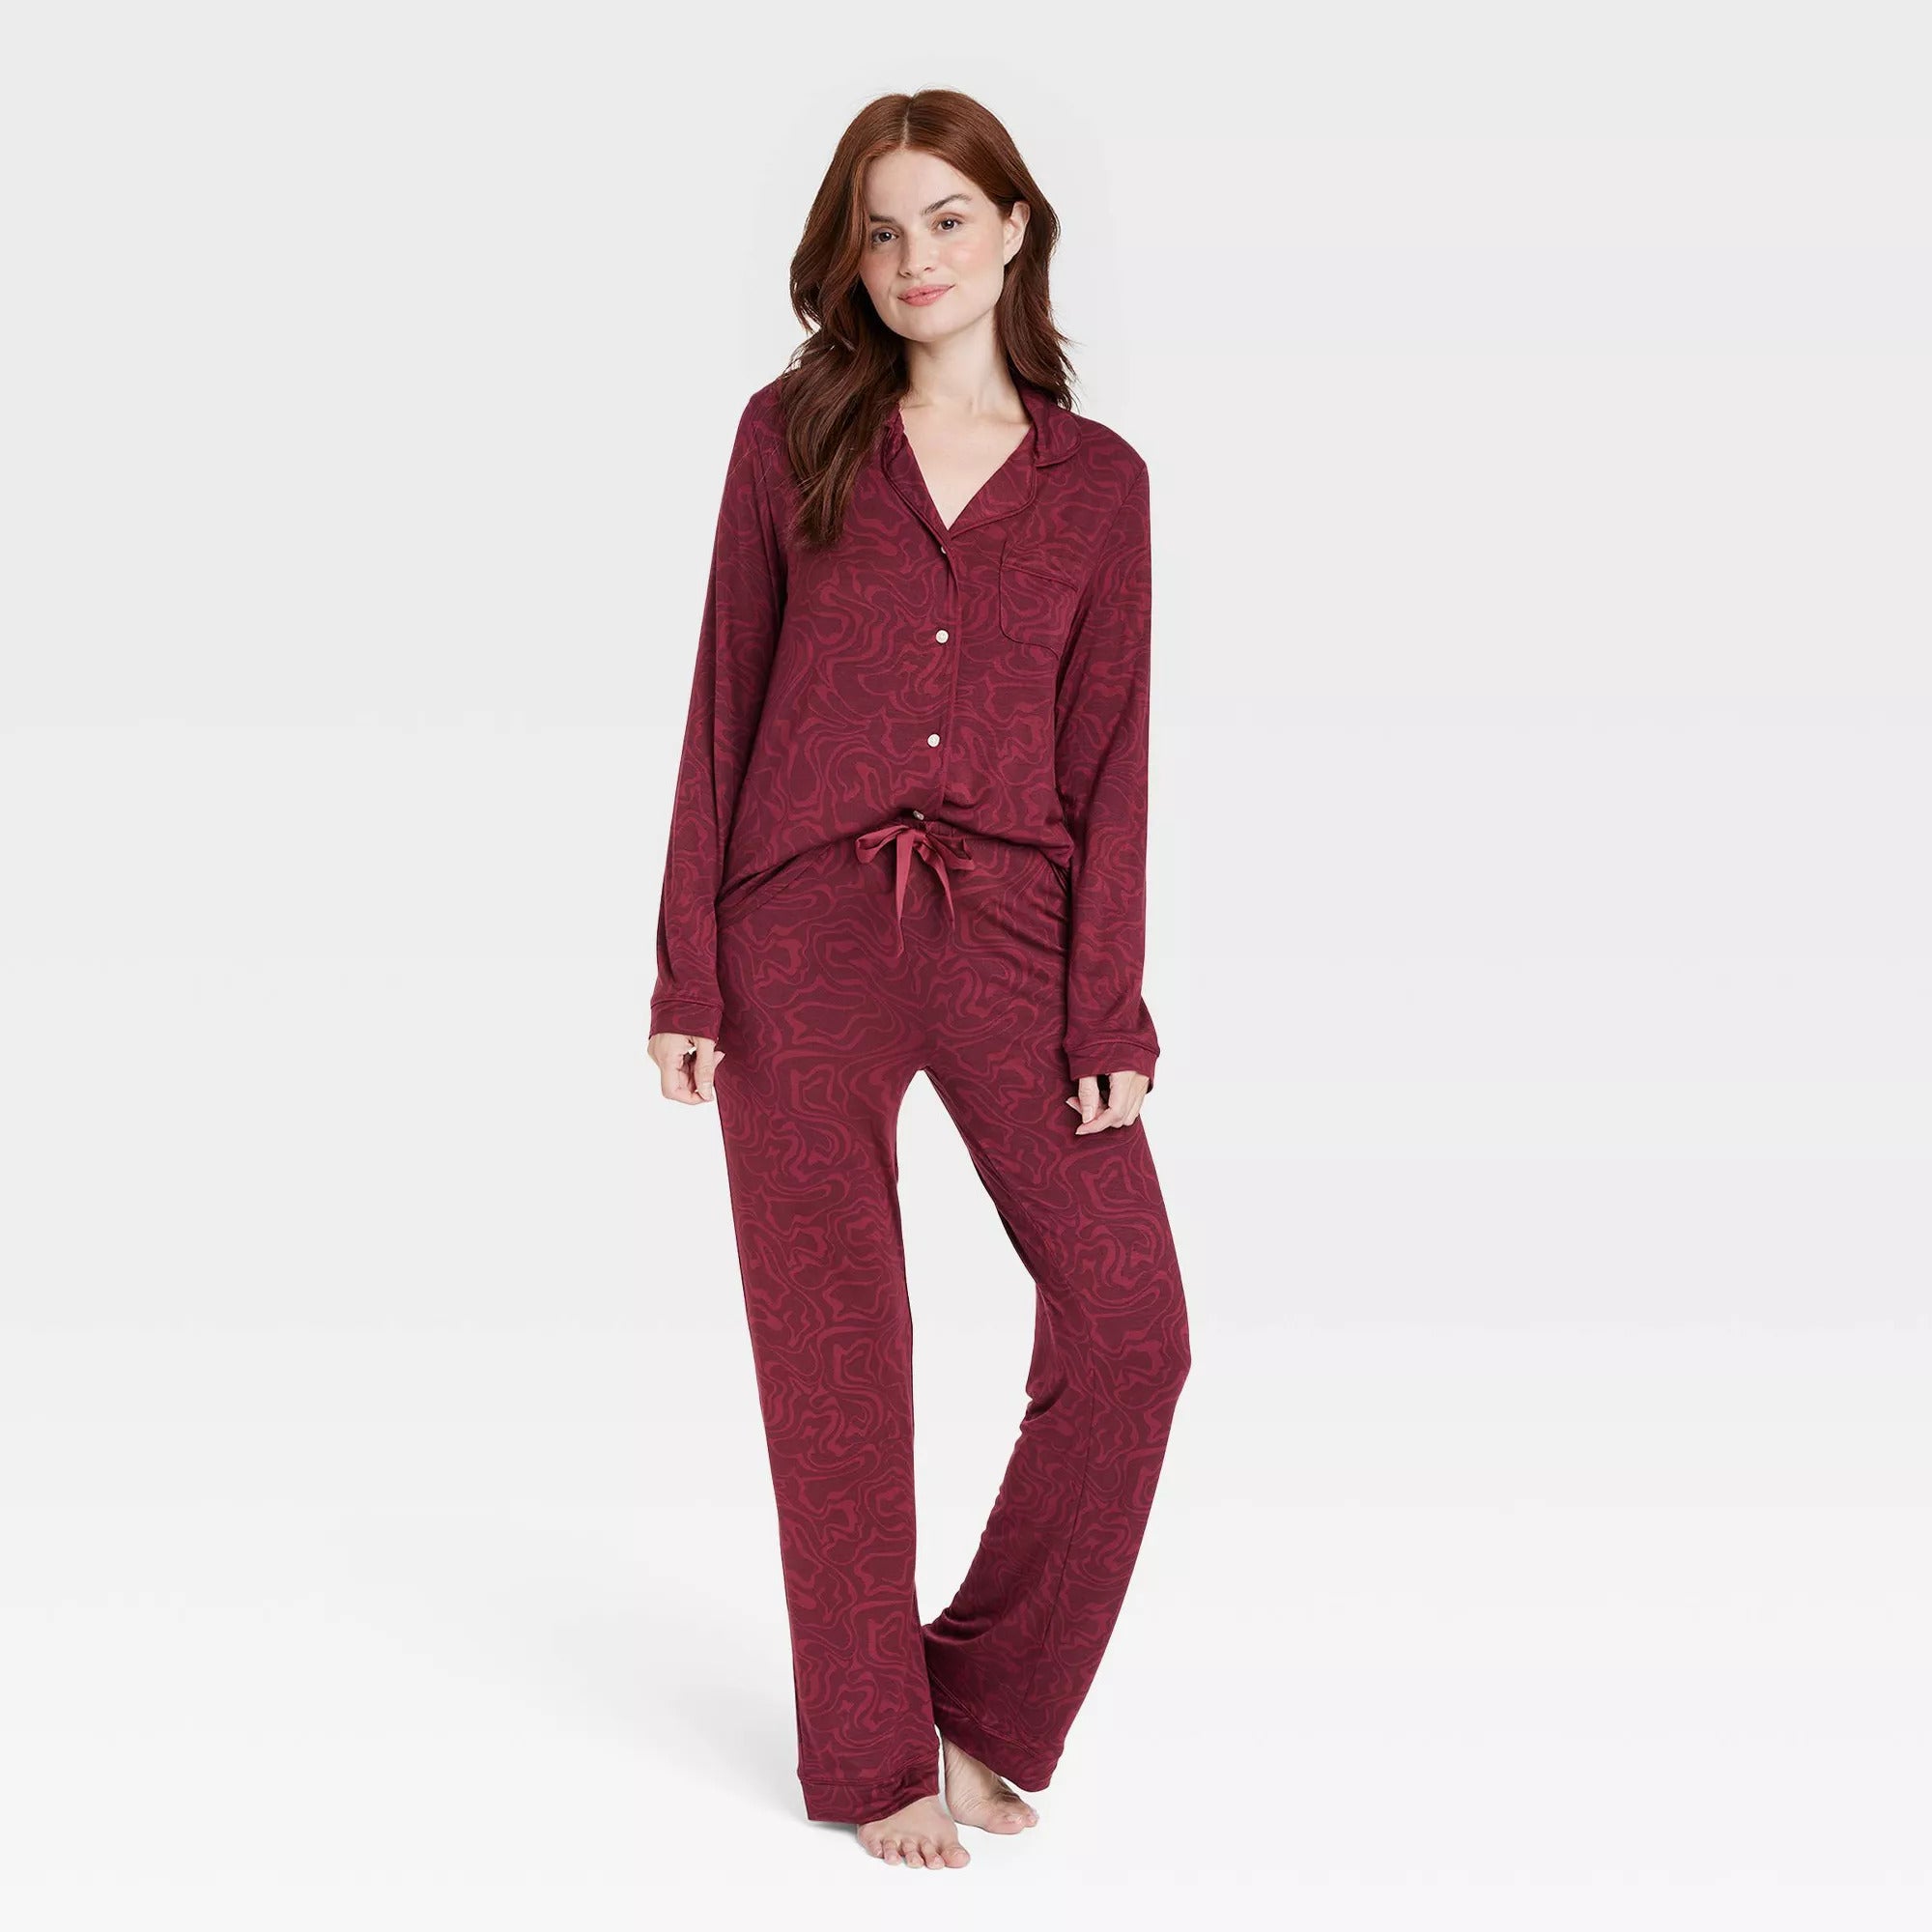 The 7 Best Target Pajamas